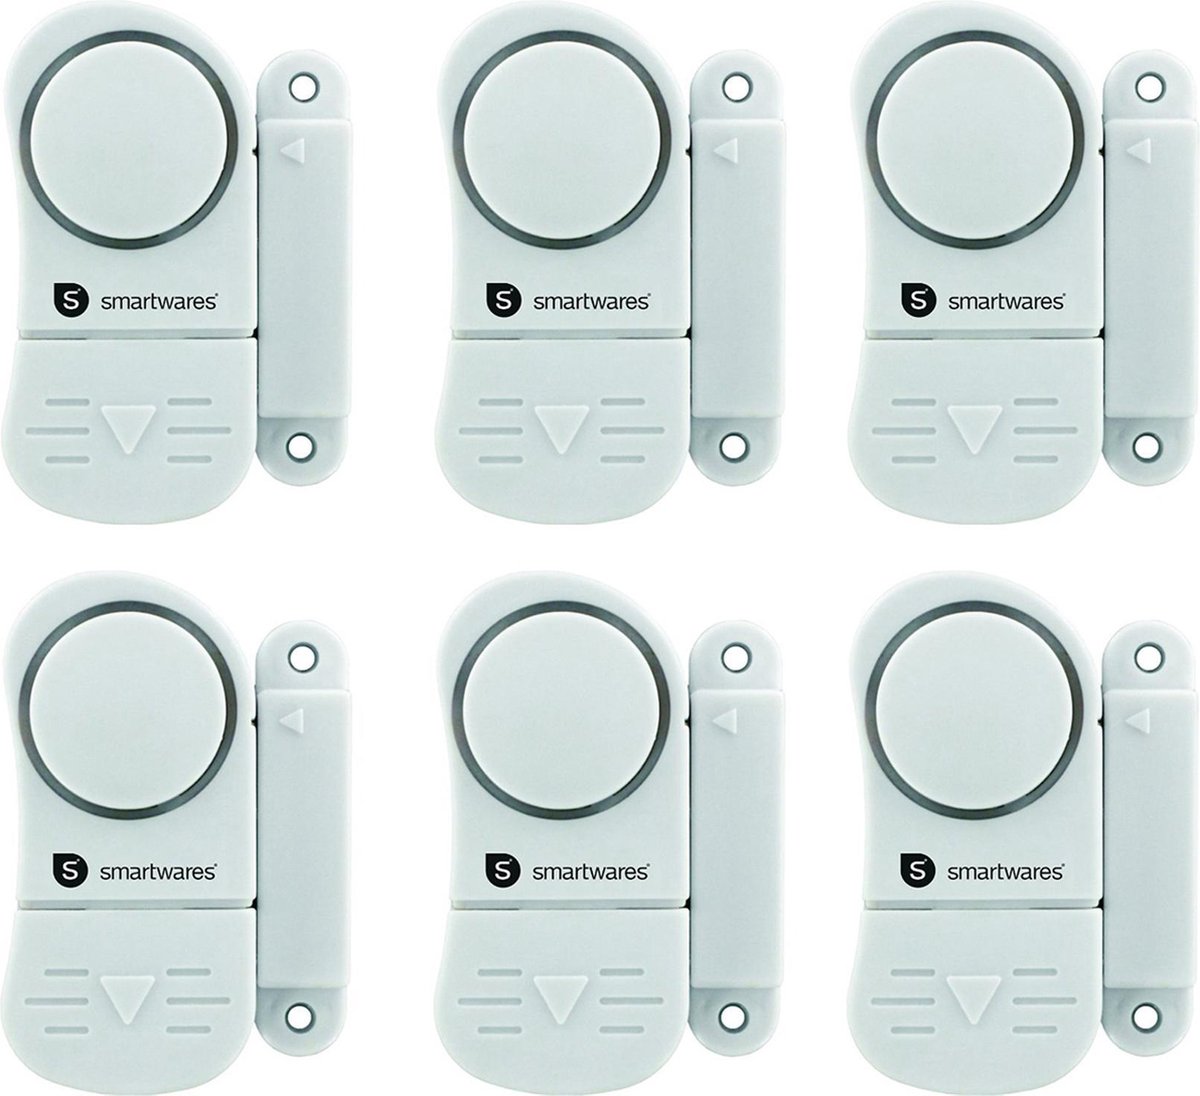 SMARTWARES set van 6 compacte magnetische alarmsystemen voor deuren, ramen, kastjes etc. - Smartwares